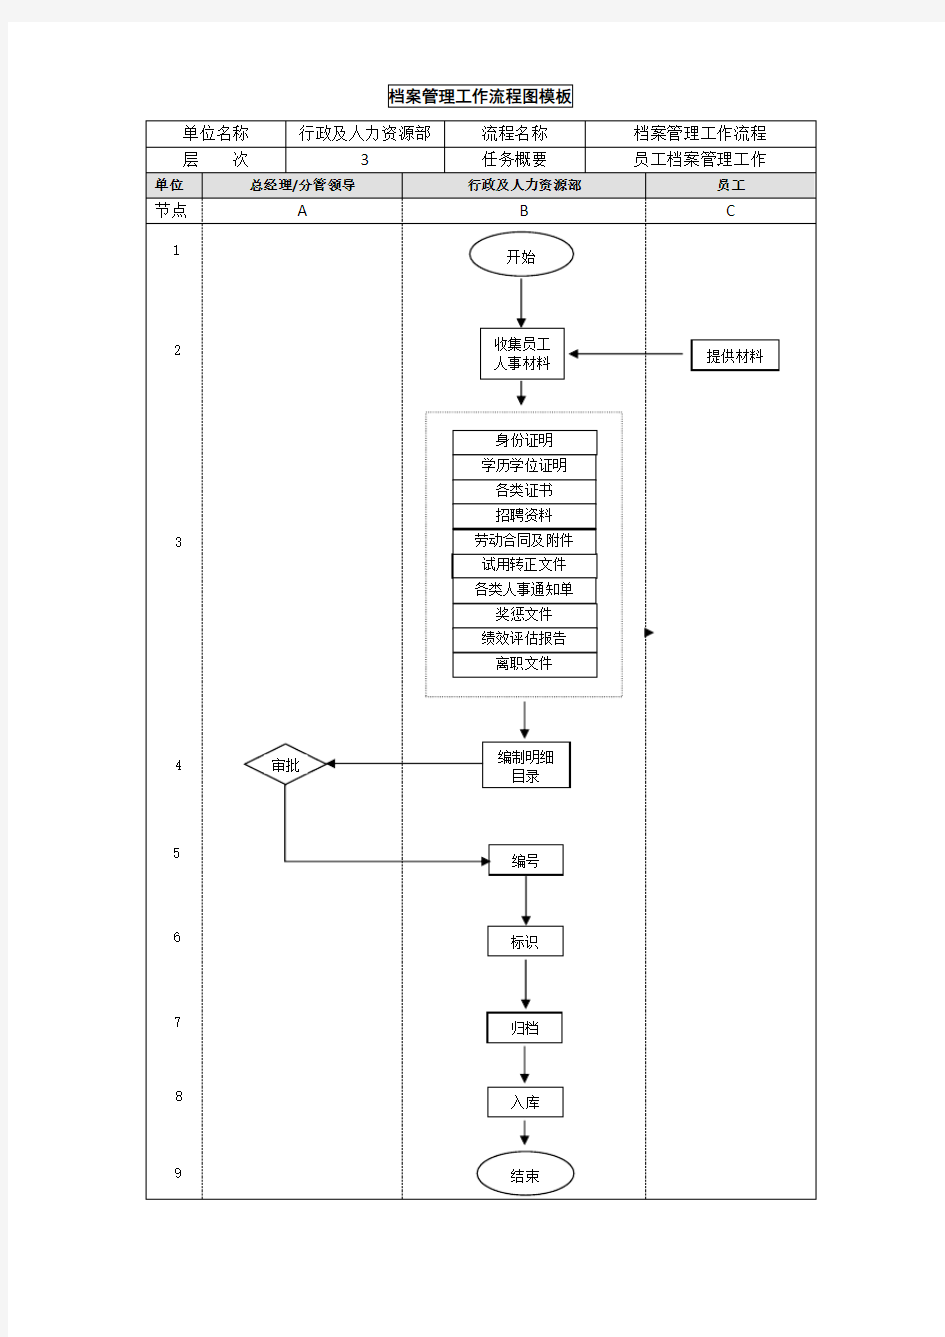 档案管理工作流程图模板